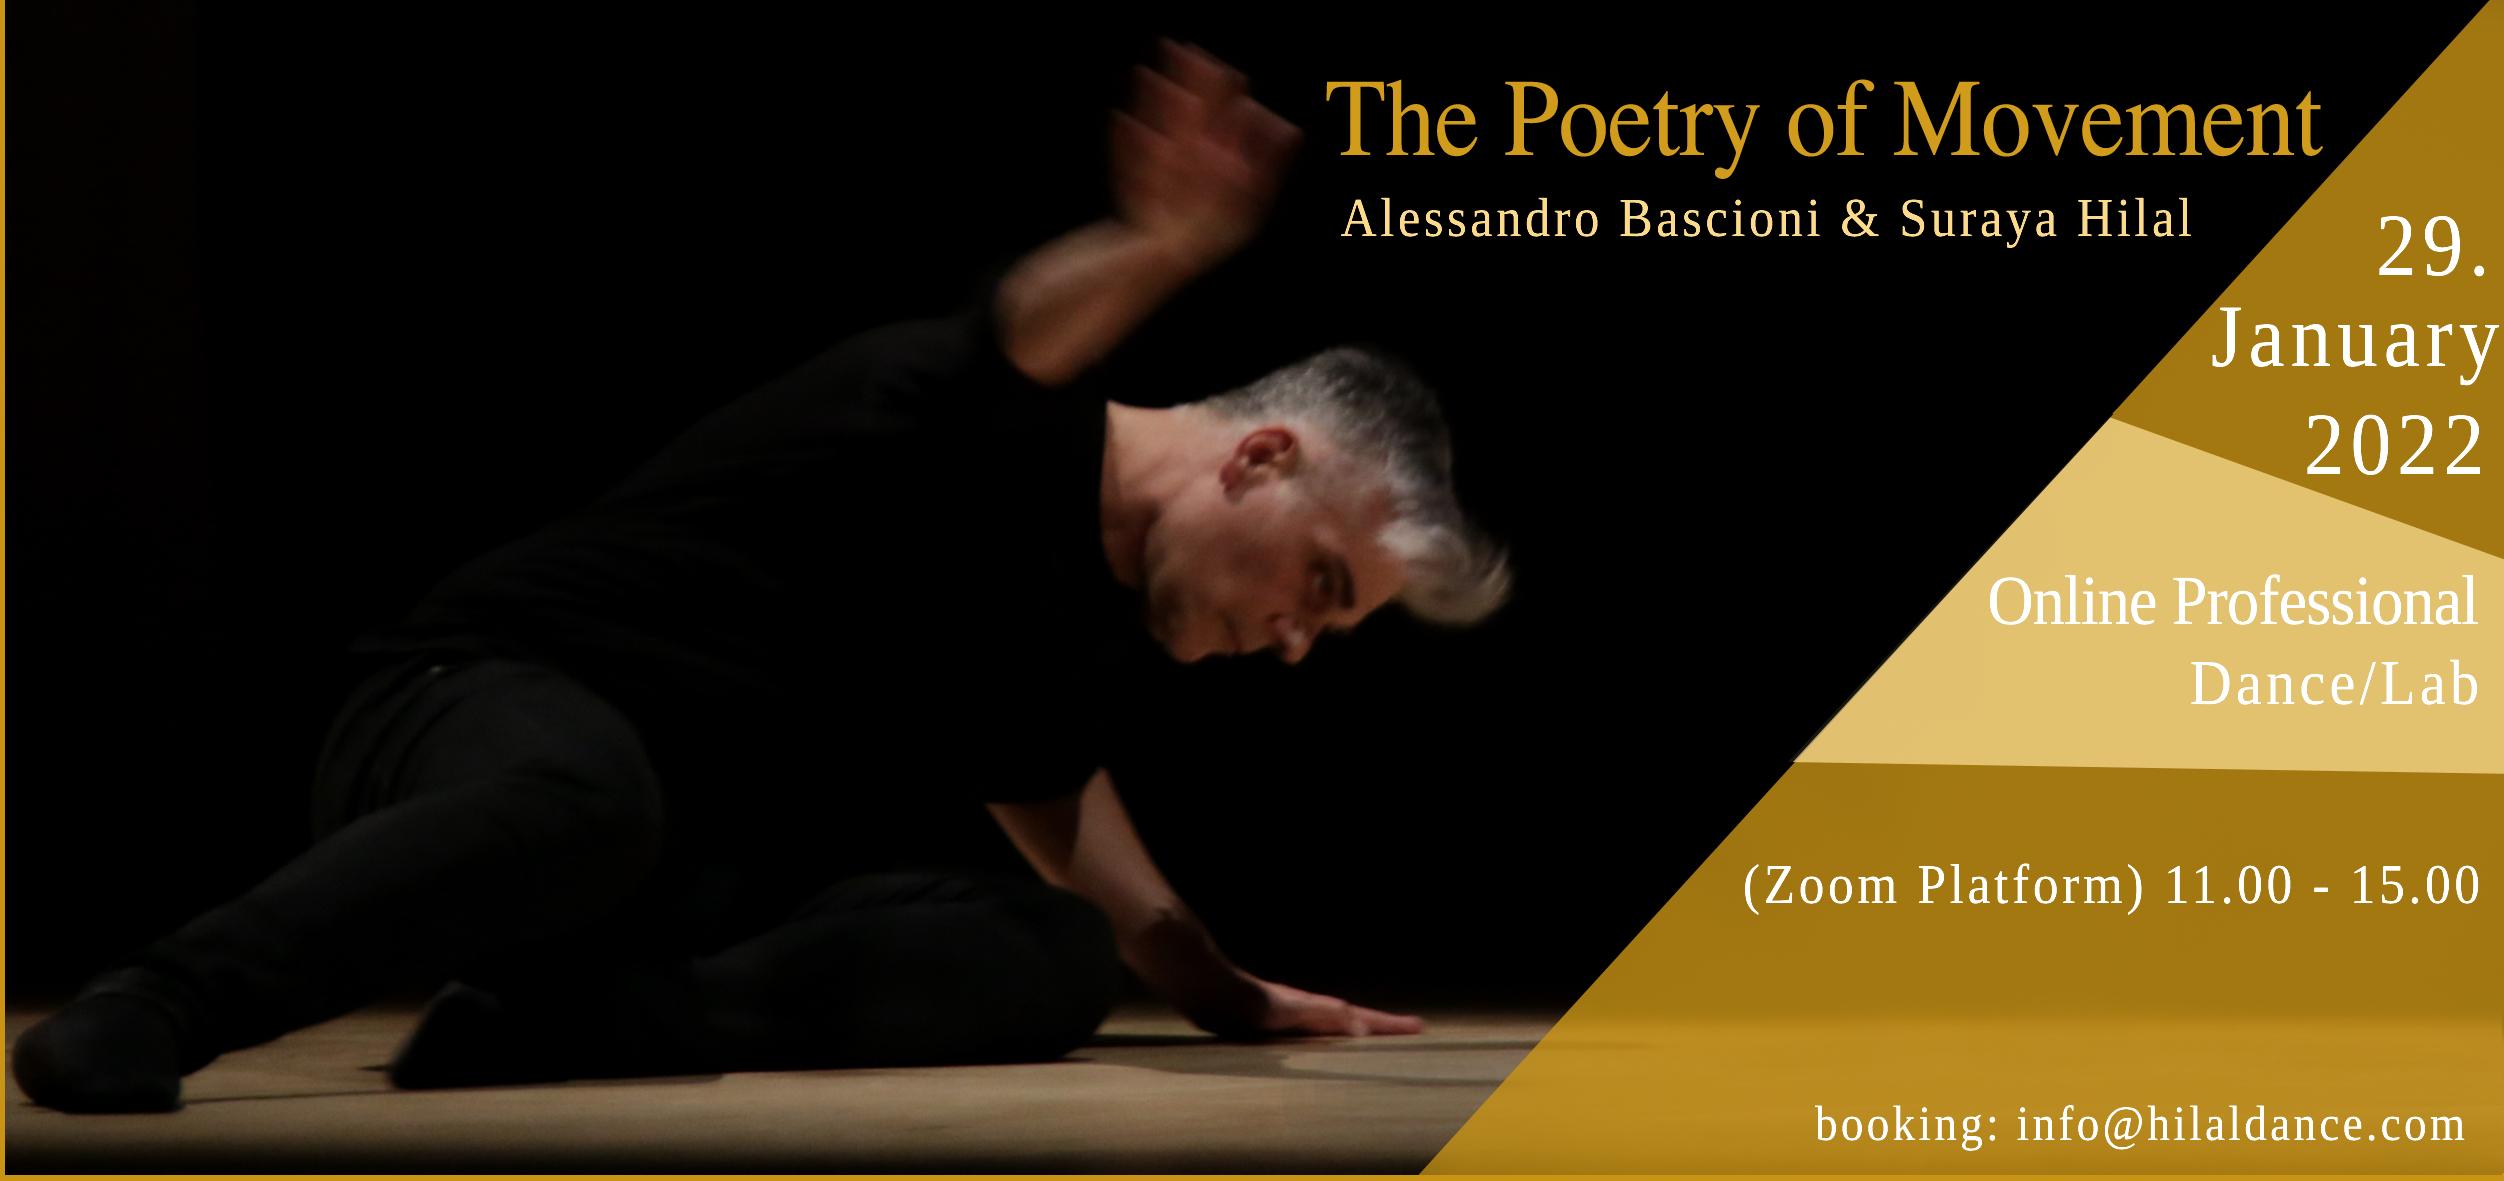 Laboratorio per professionisti ” La poesia del Movimento” 29 Gennaio 2022 con A. Bascioni e S. Hilal